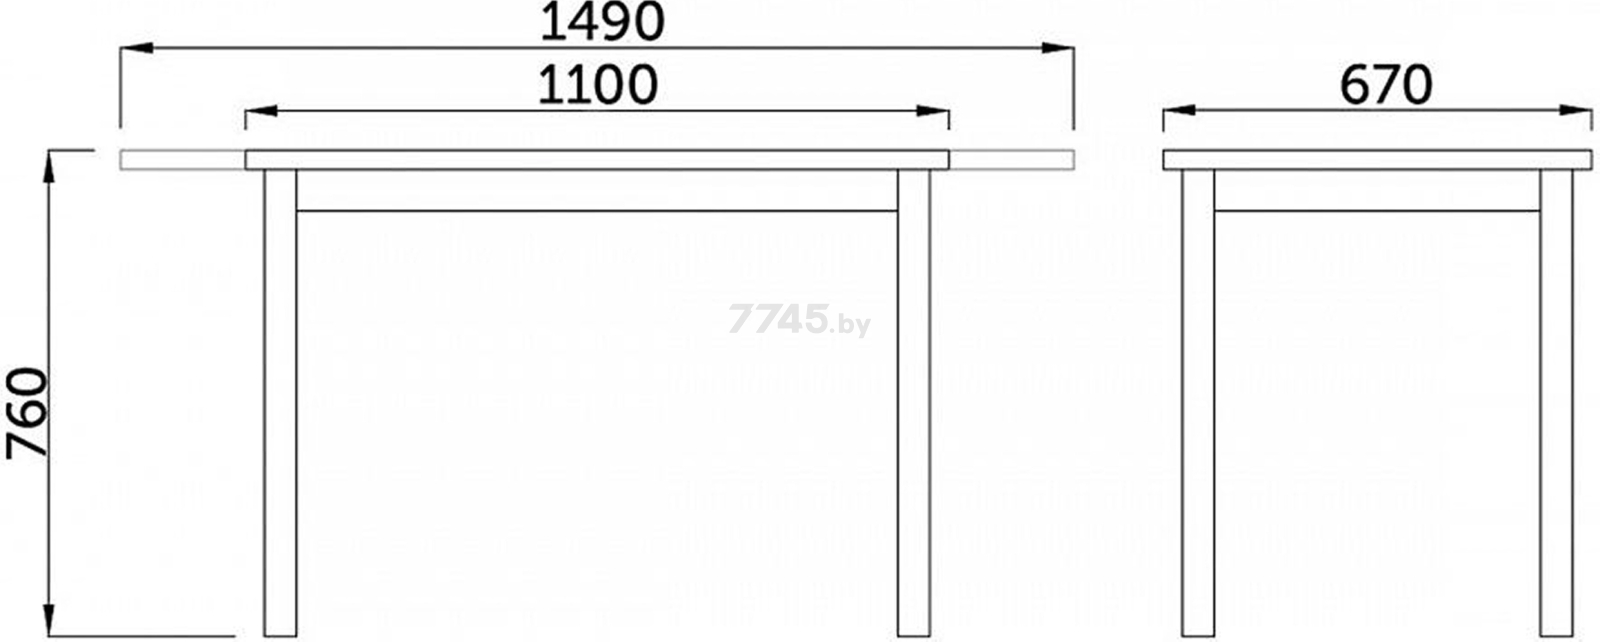 Стол кухонный ЭЛИГАРД Black раздвижной белый матовый 110-149х67х76 см - Фото 9